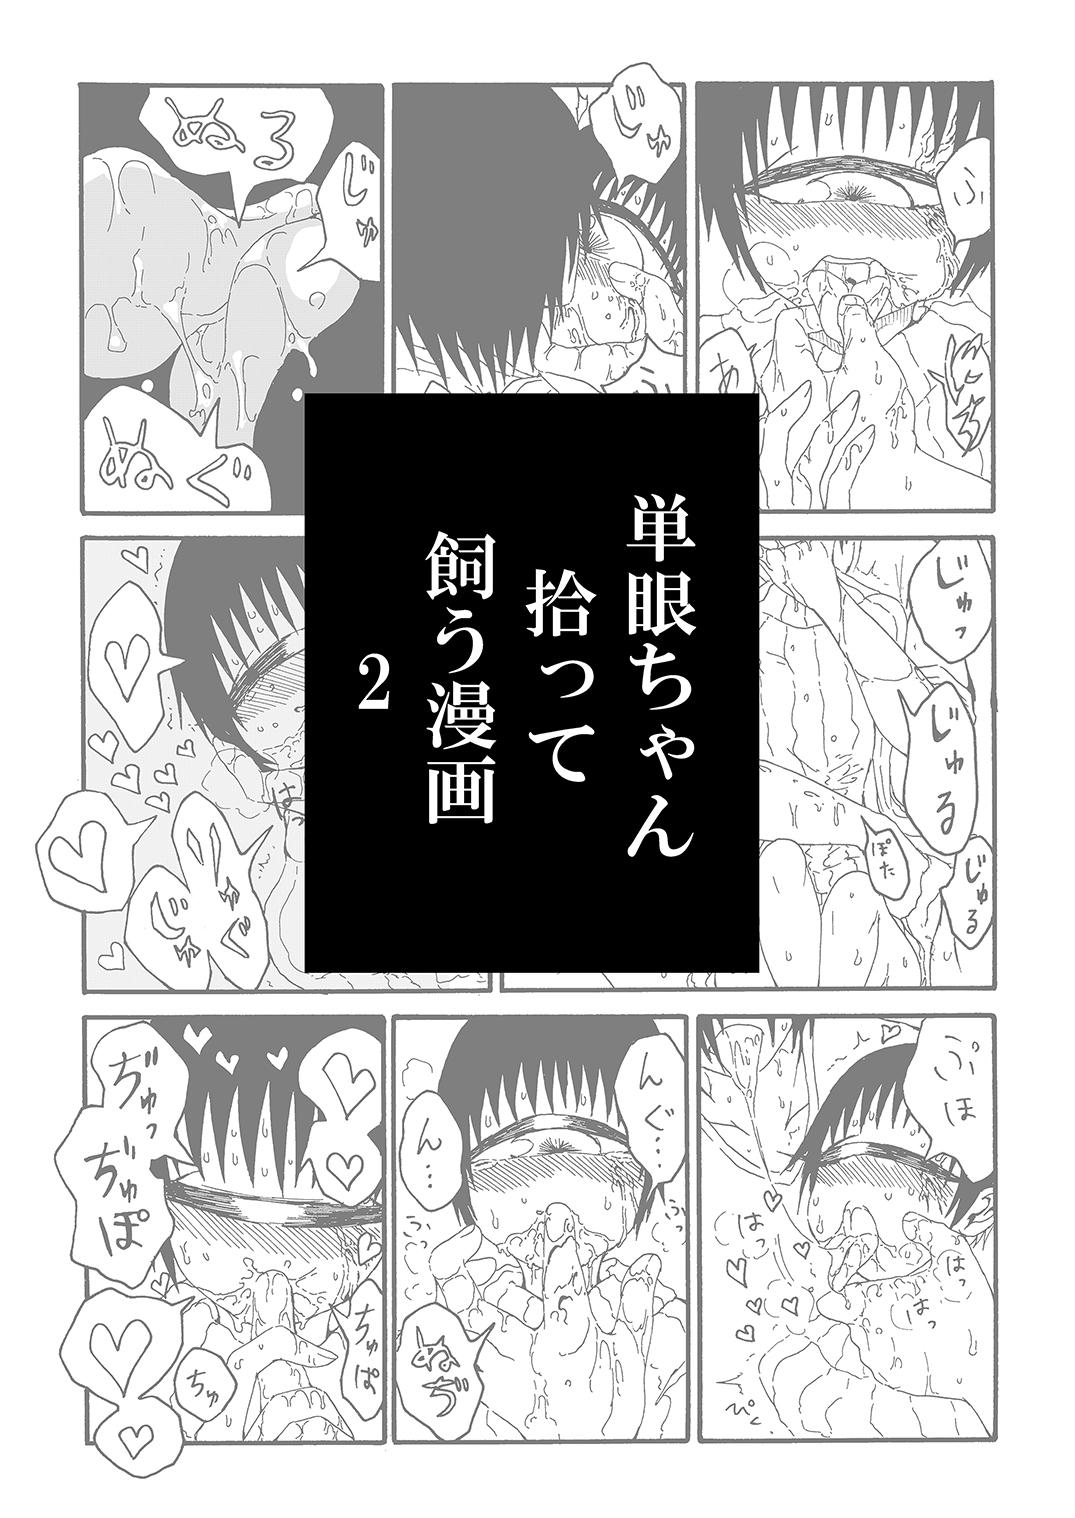 Kink Tangan-chan Hirotte Kau Manga 2 Adorable - Page 3